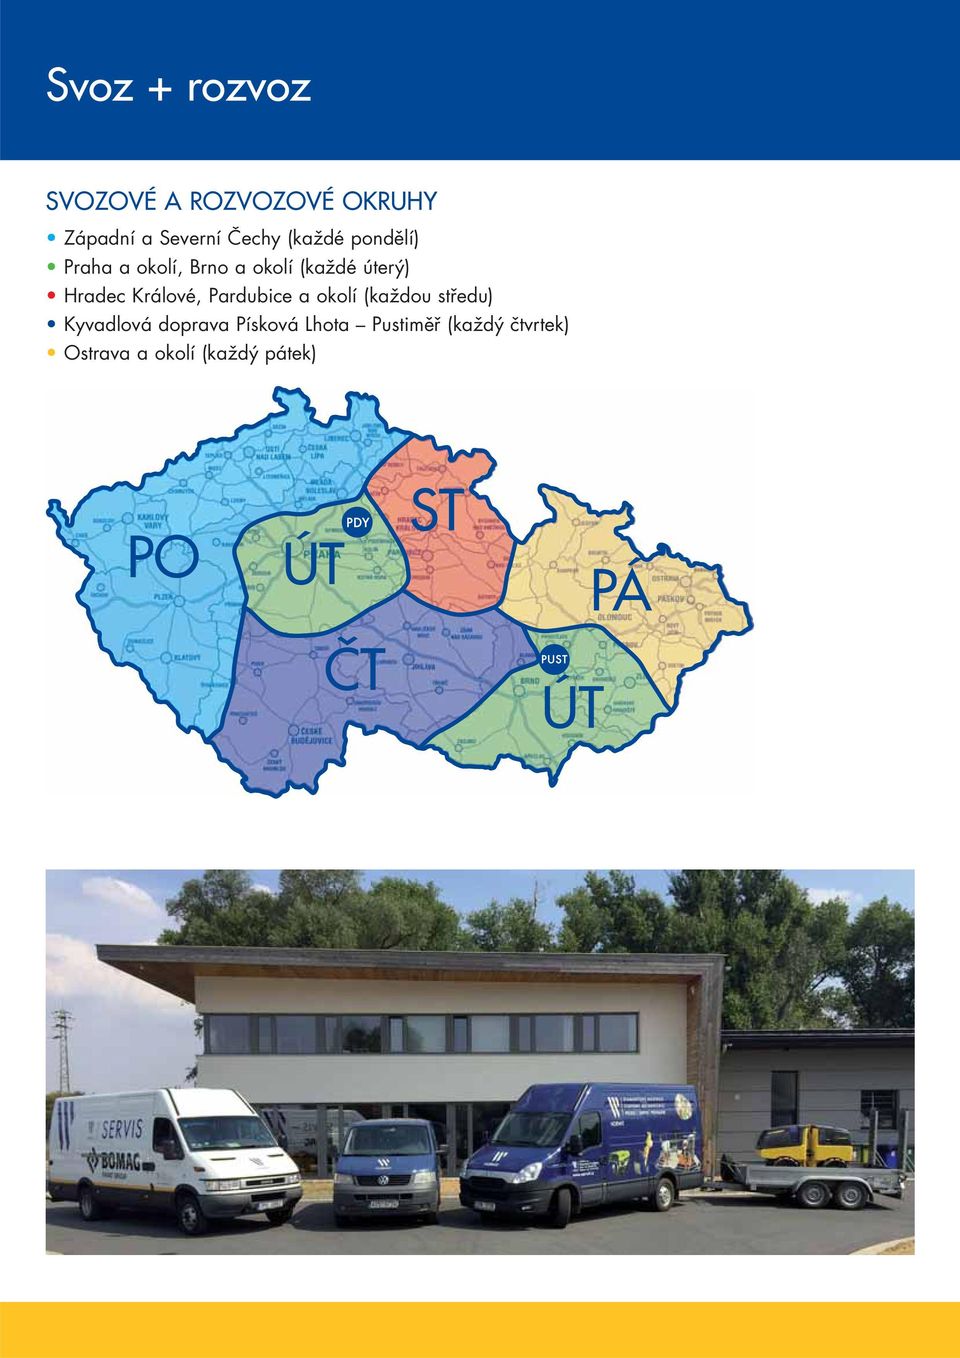 Hradec Králové, Pardubice a okolí (každou středu) Kyvadlová doprava